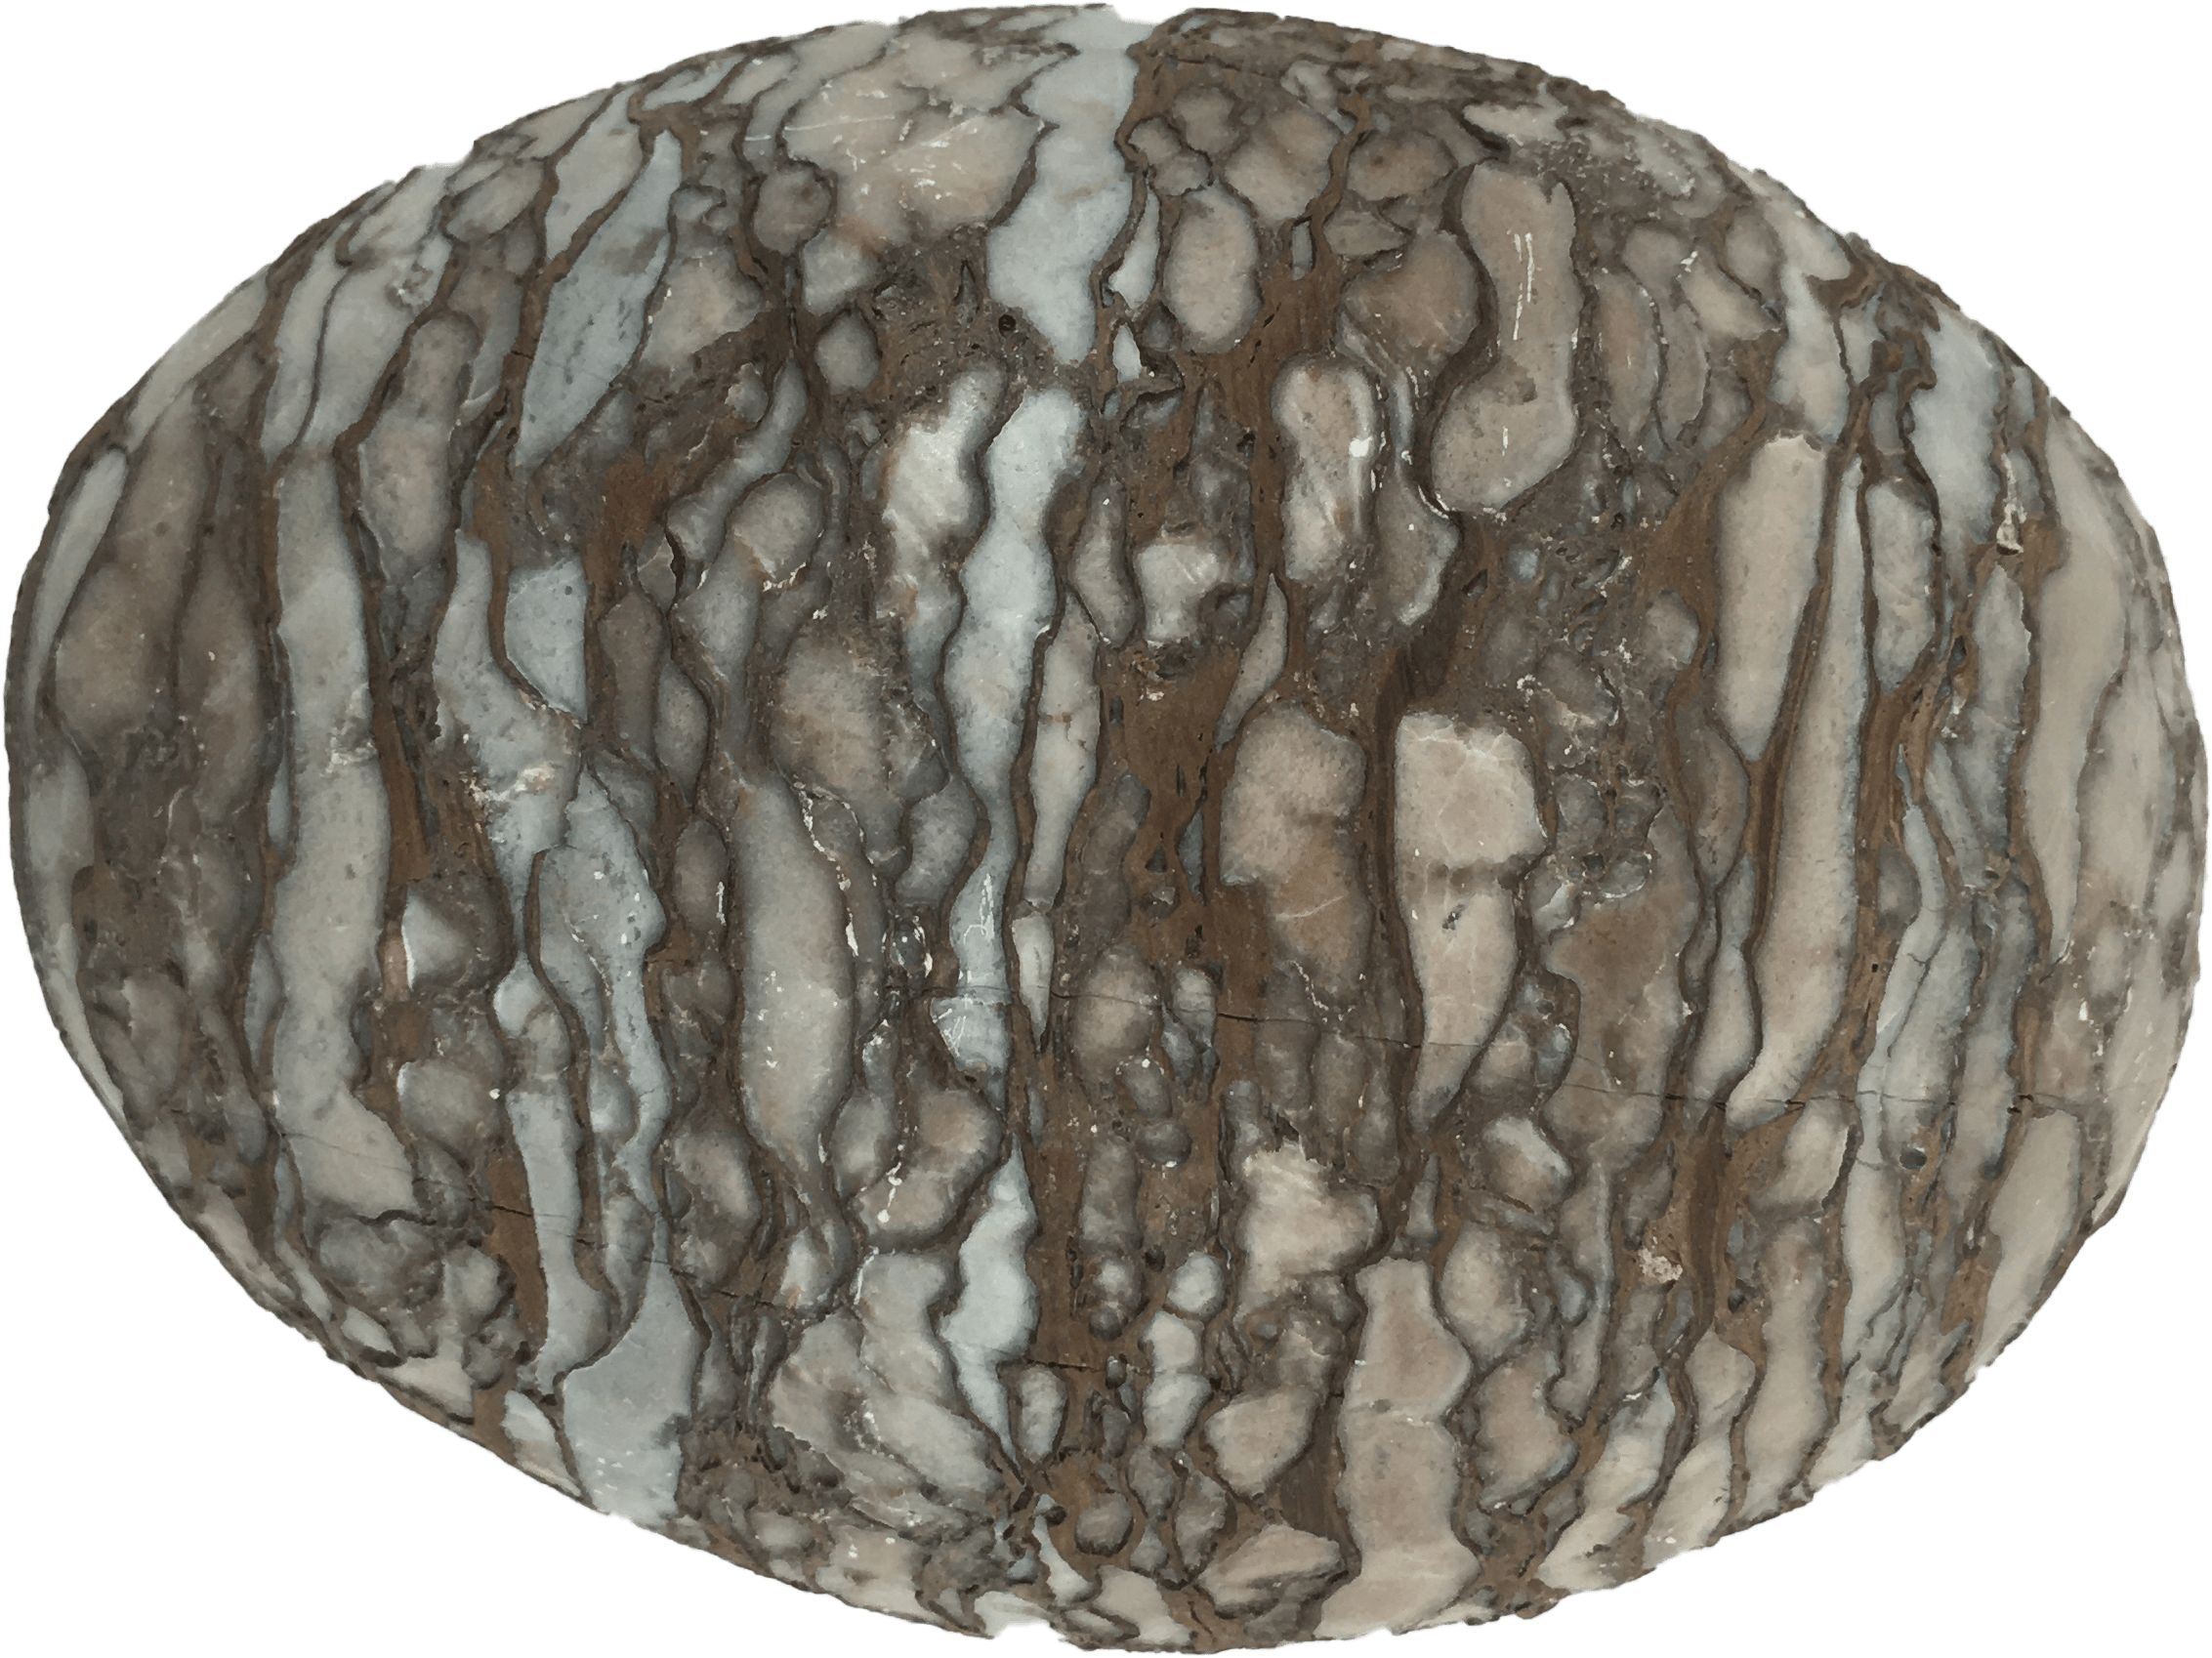 约1462g,蟒蛇蛋蛋壳又软又薄,不像恐龙蛋质地坚硬,所以形成化石的要求